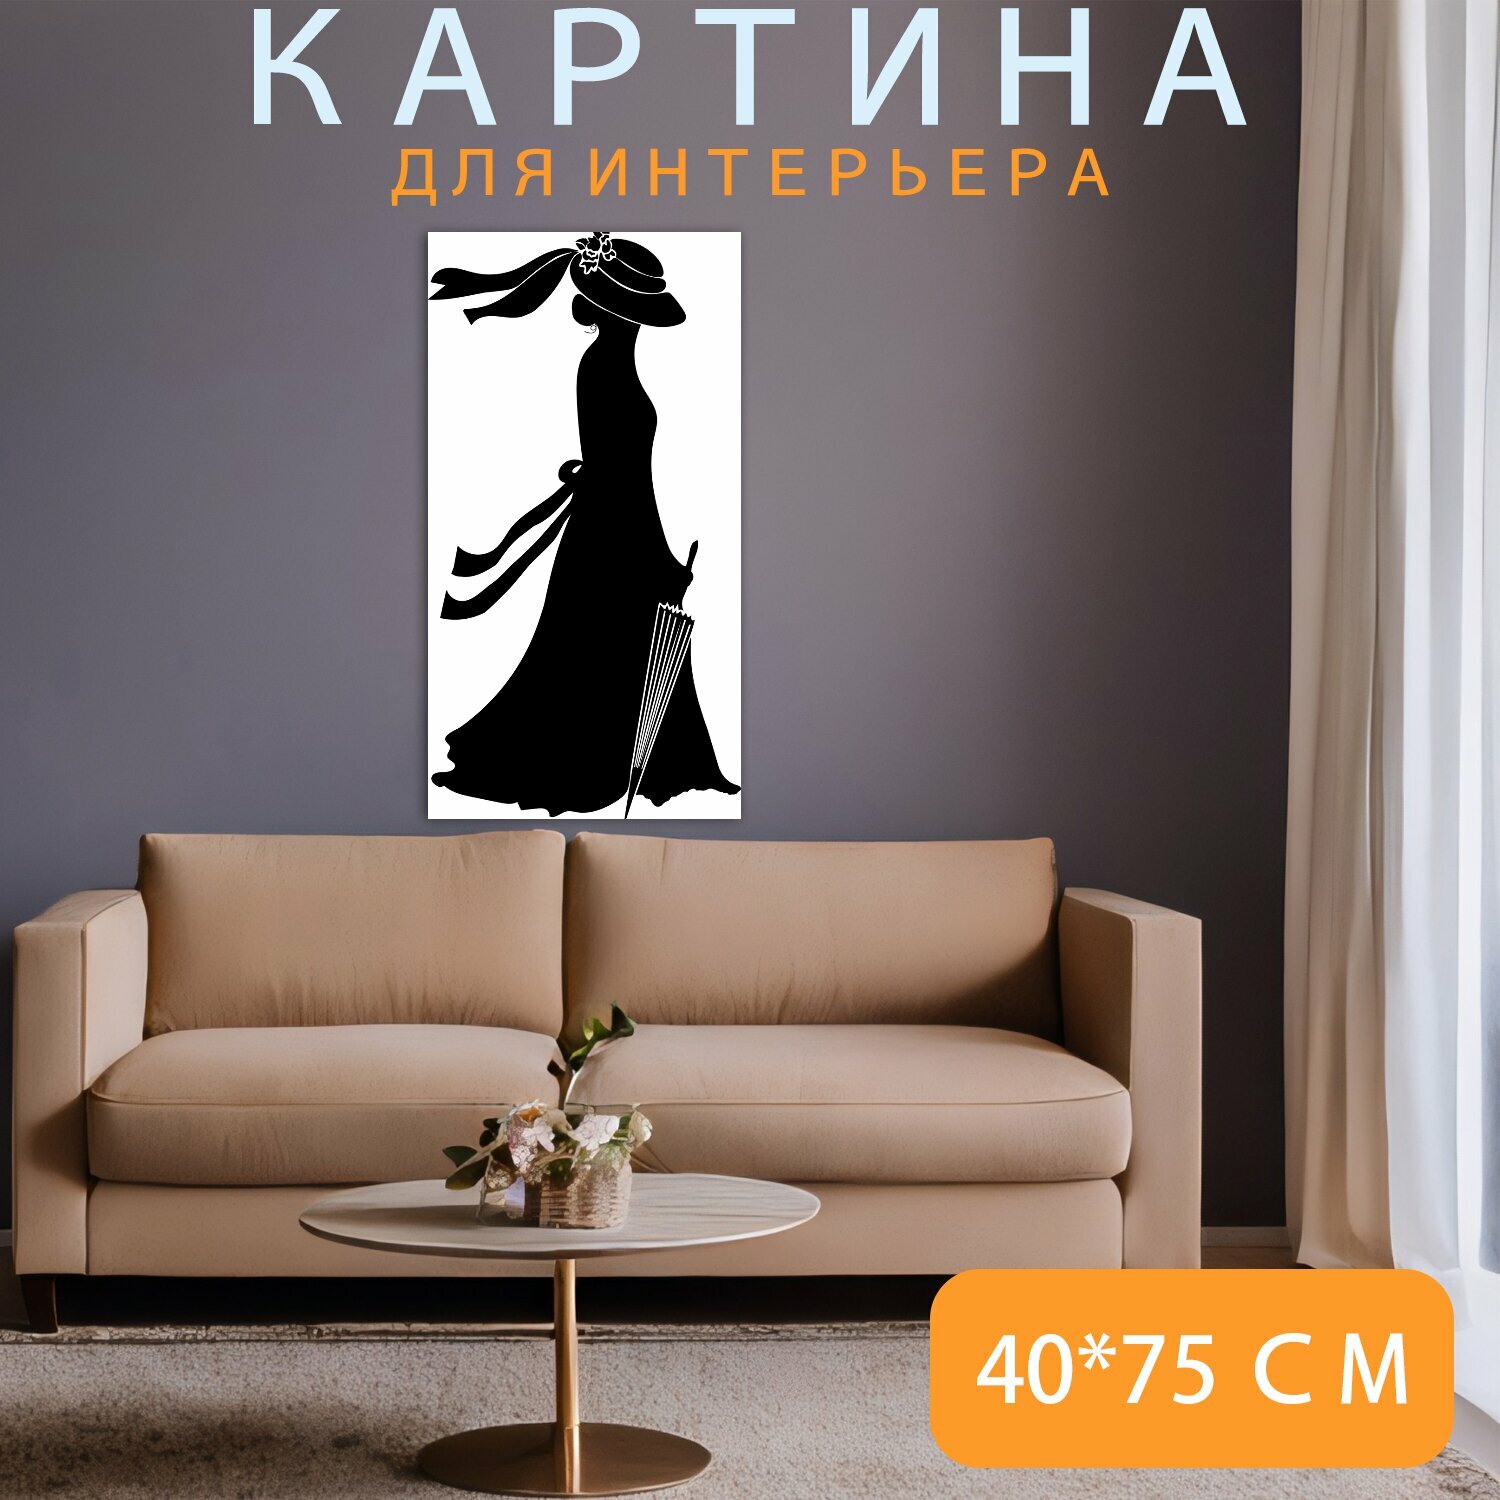 Картина на холсте "Женщина, платье, силуэт" на подрамнике 40х75 см. для интерьера